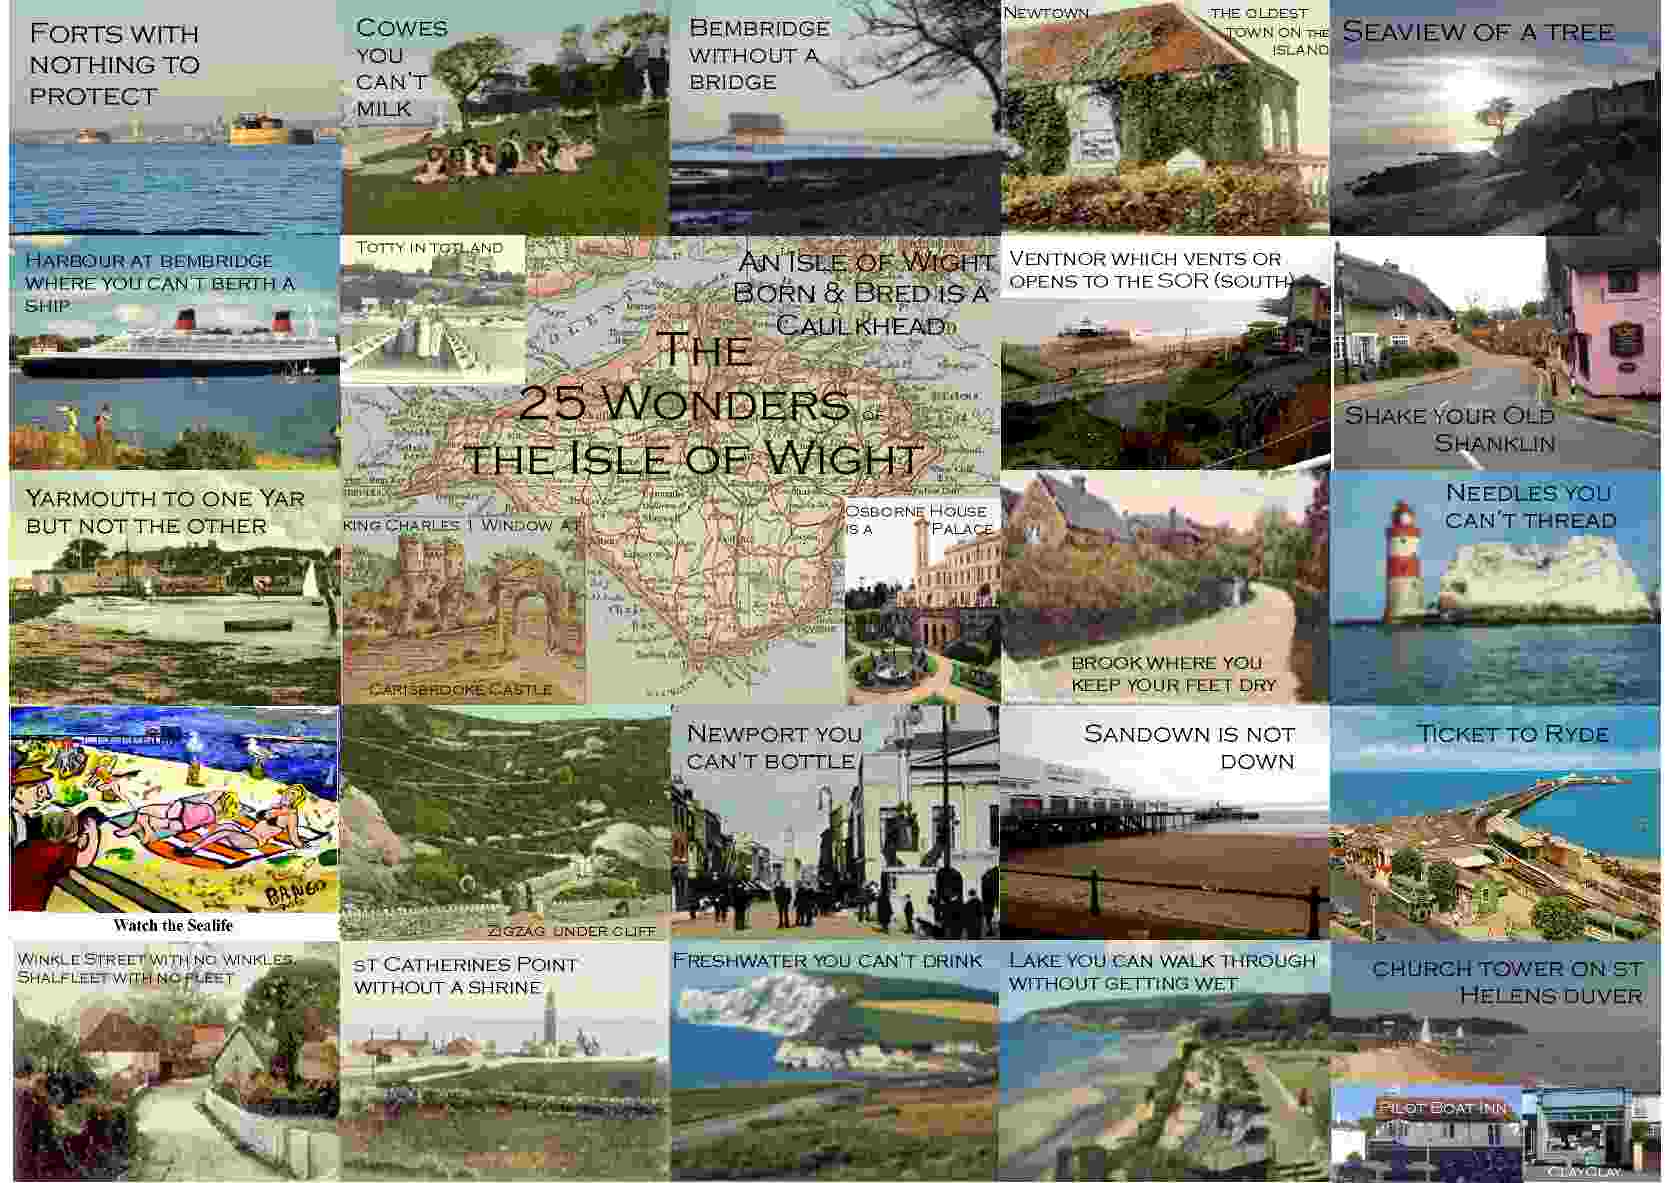 '25 Wonders of Wight' Postcard